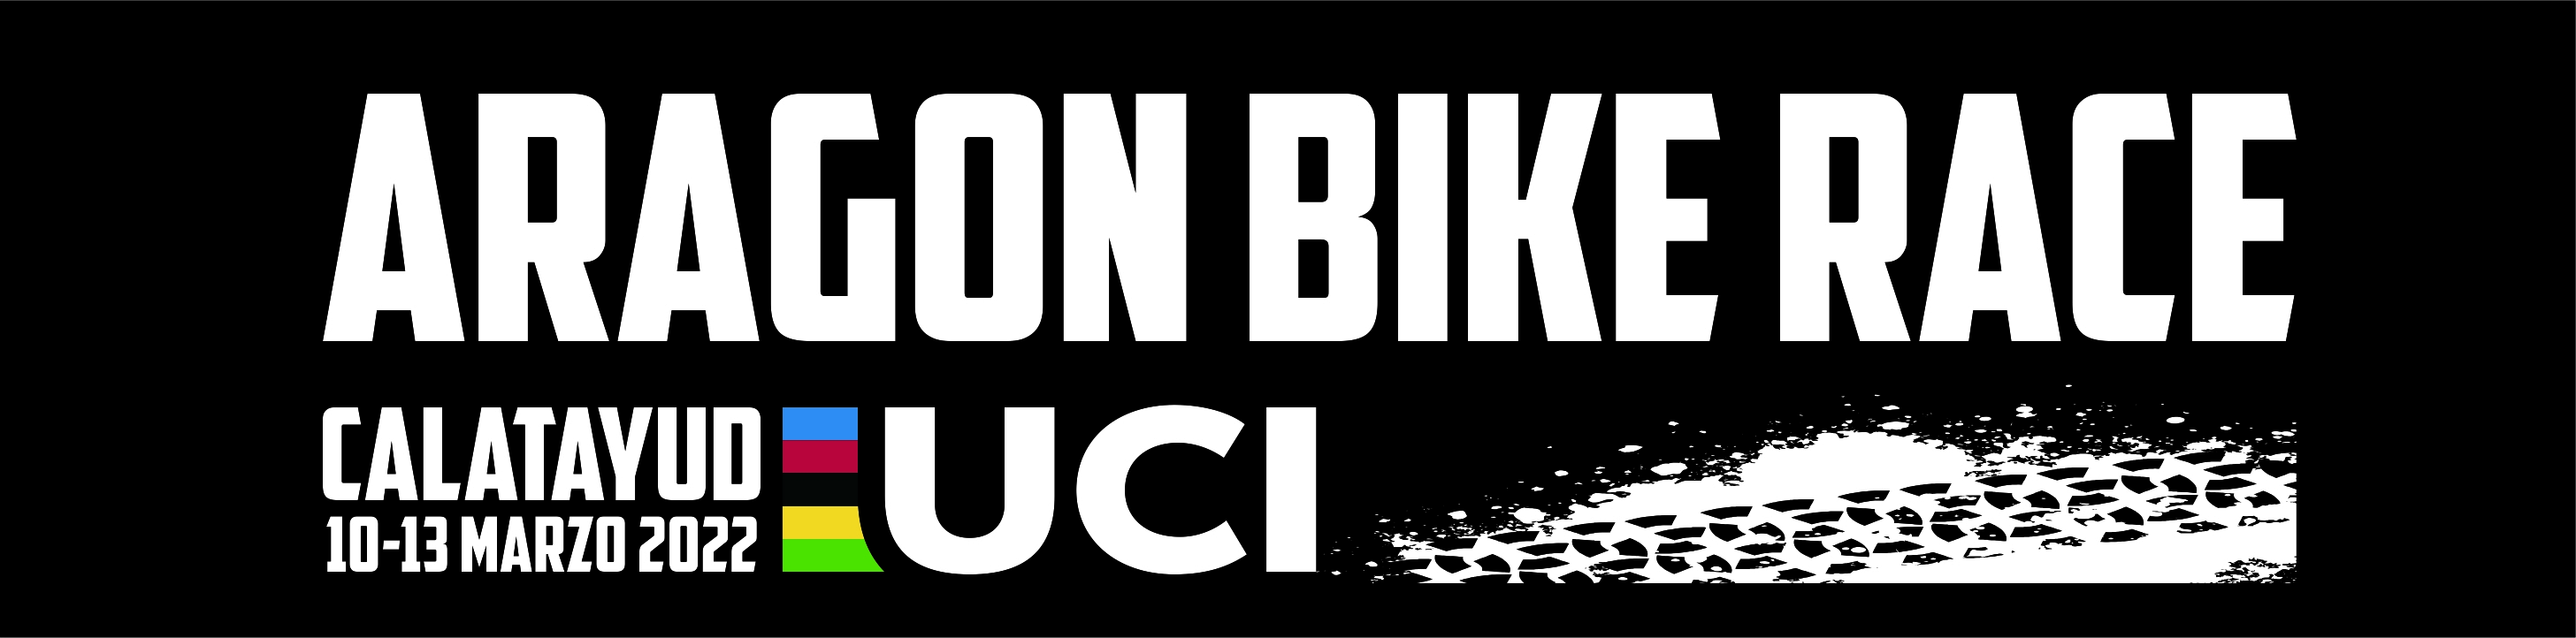 X ARAGON BIKE RACE CALATAYUD UCI